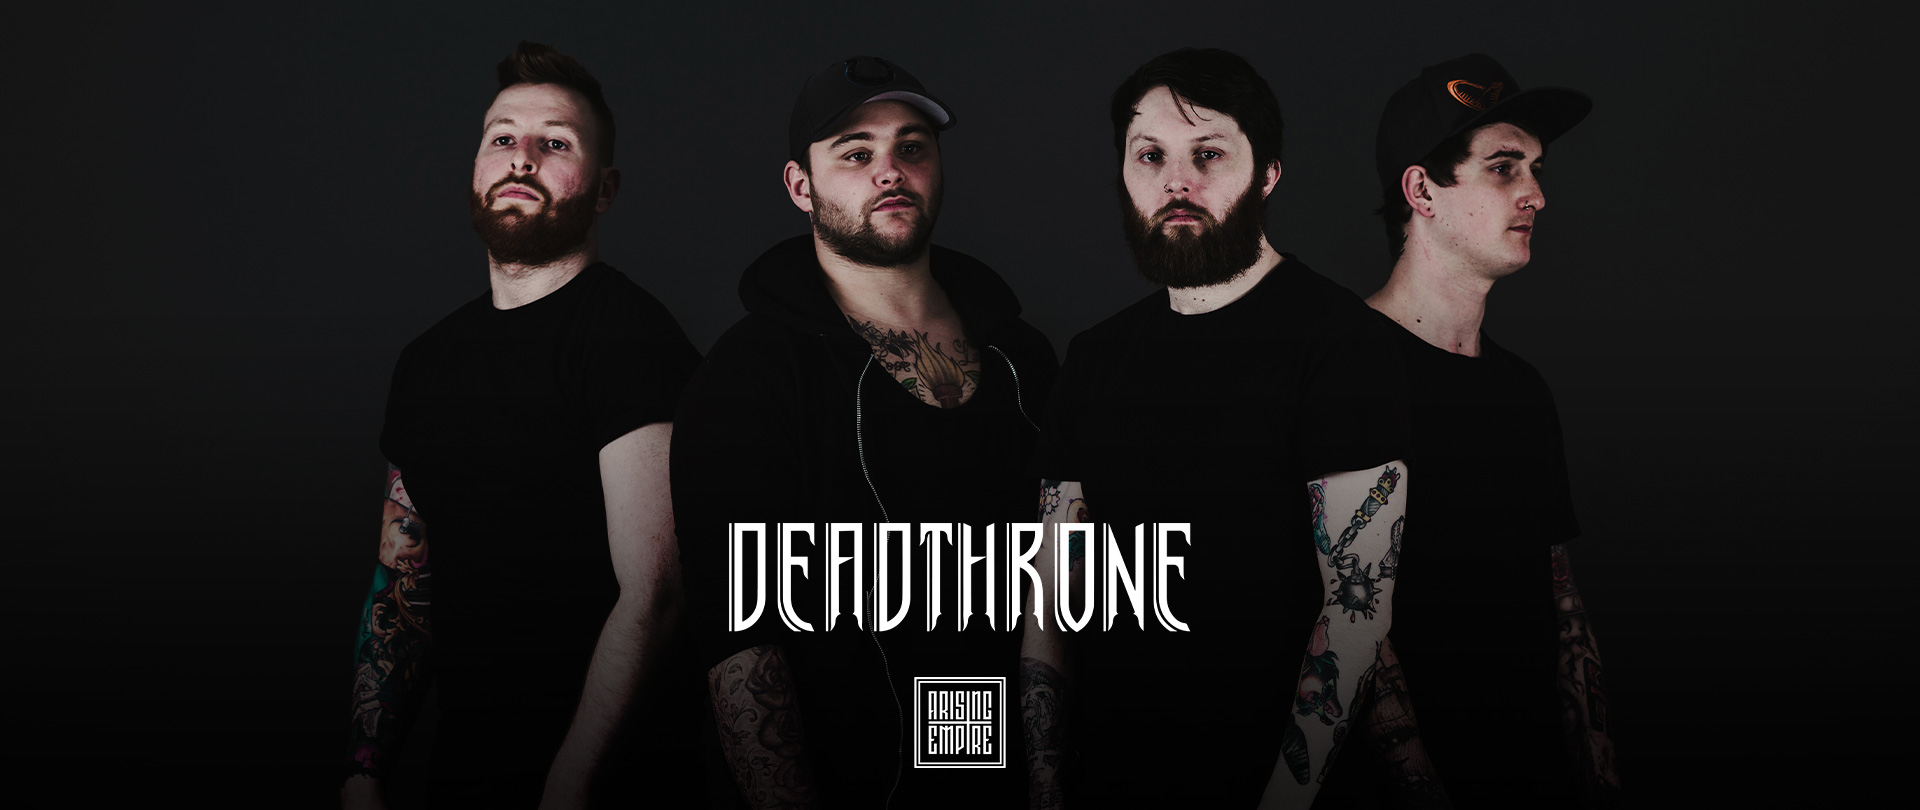 Deadthrone at Arising Empire • Offizieller Online Shop